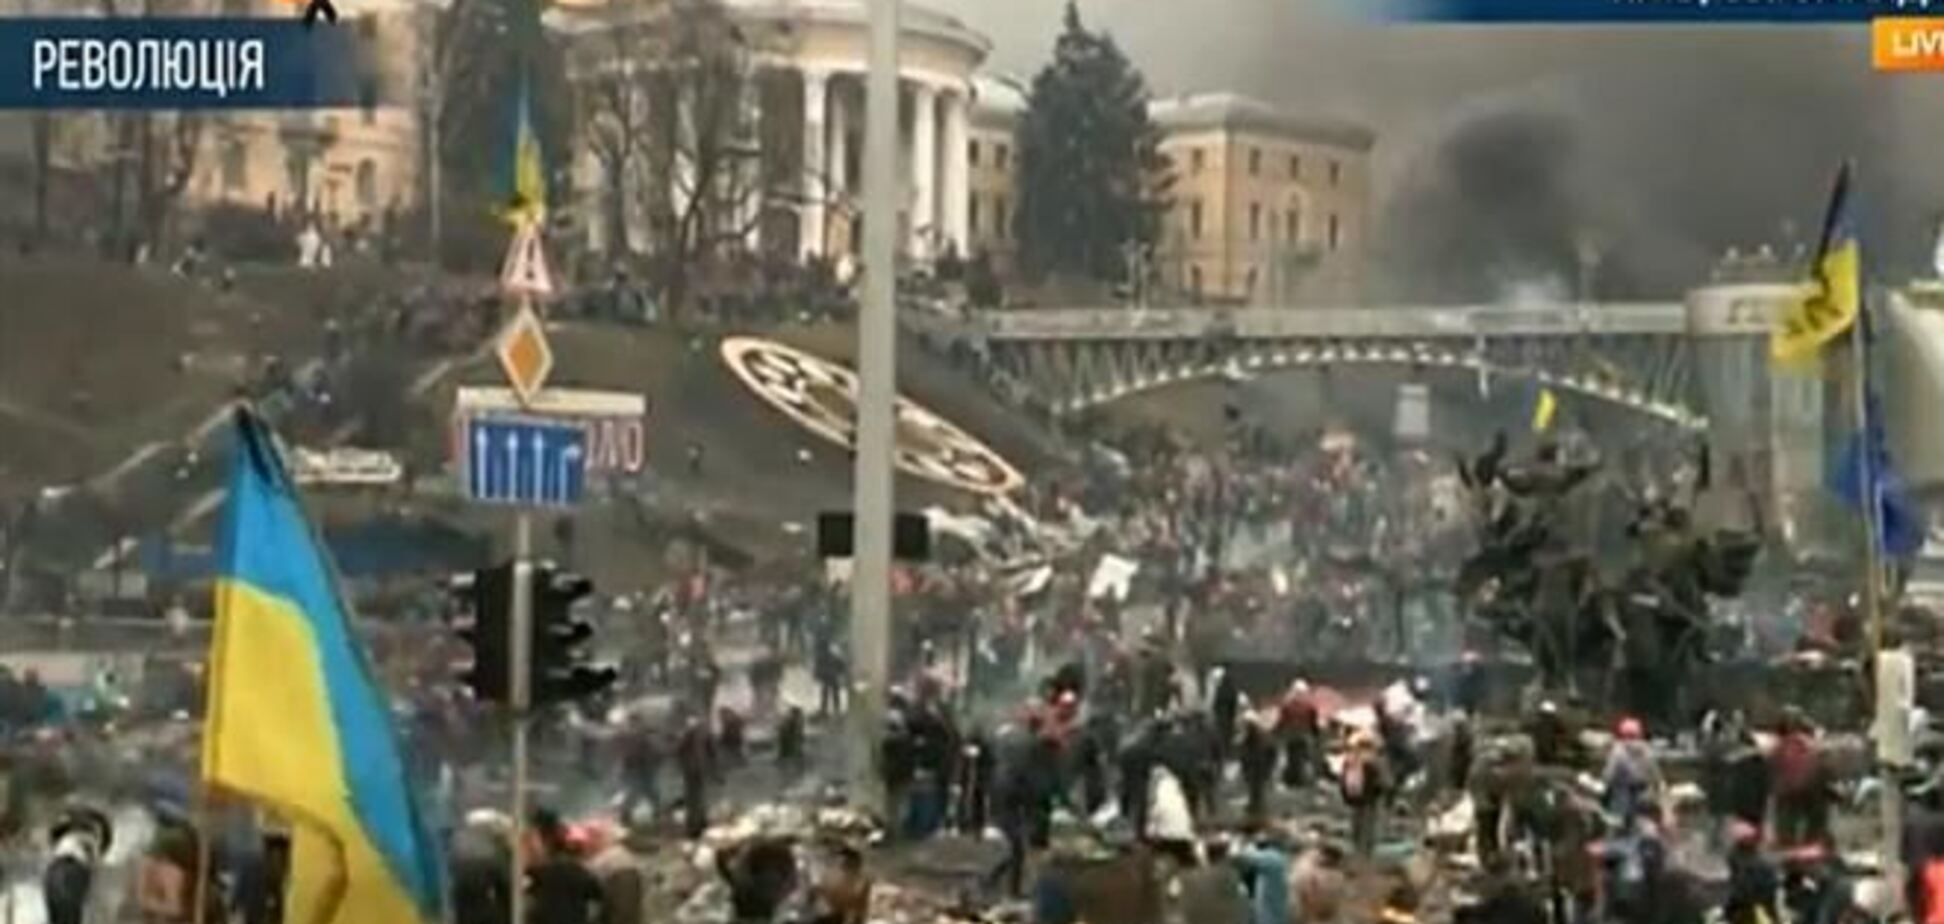 Майданівців просять не виходити за барикаду - там збройні 'тітушкі'